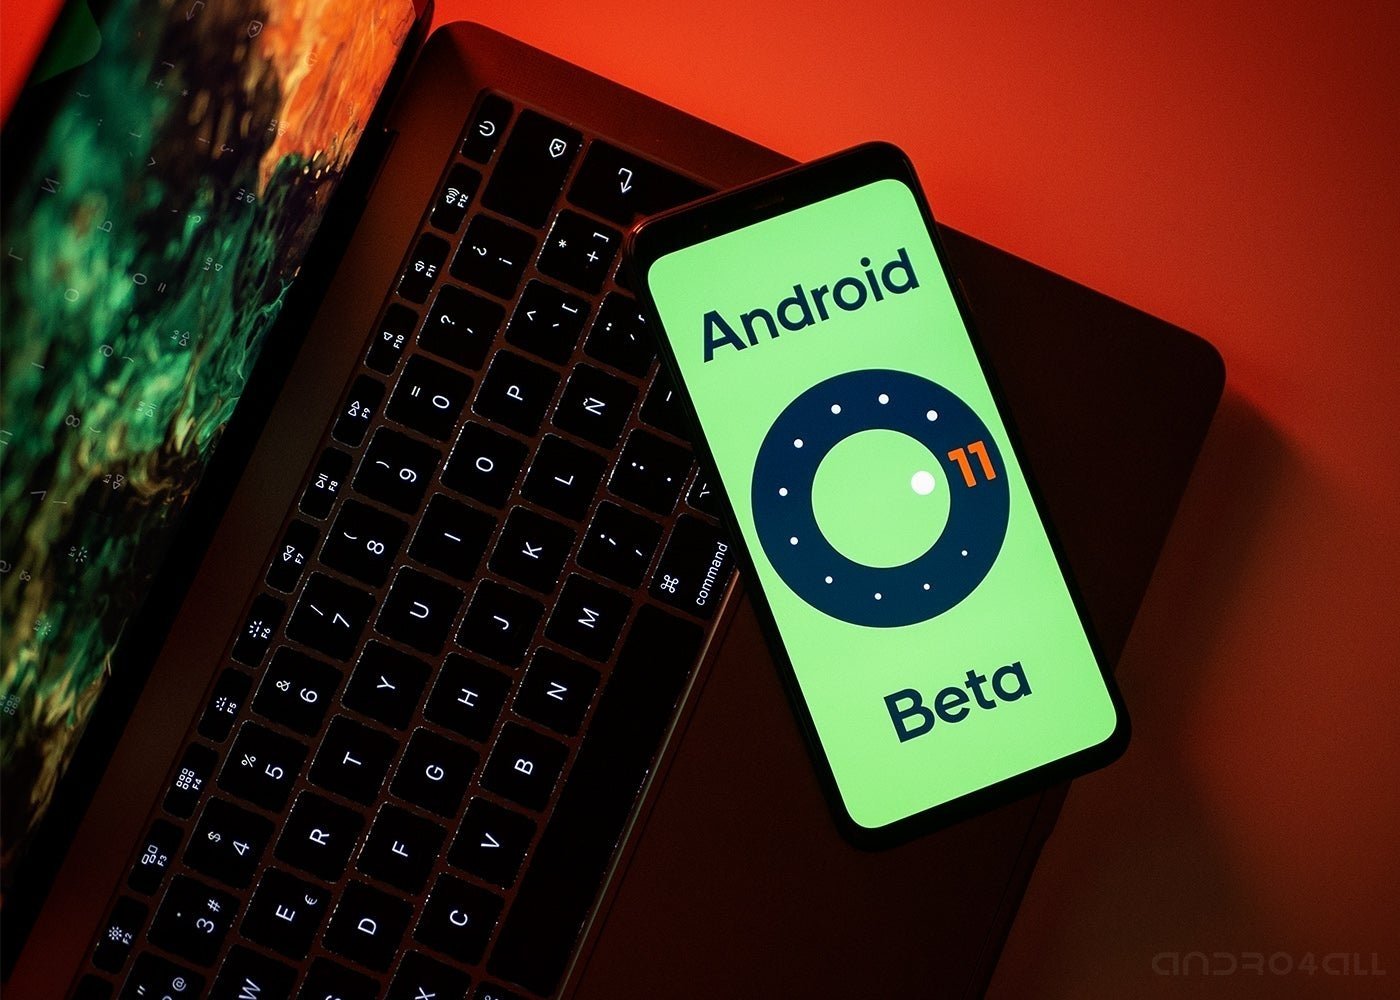 Android 10 no crece, pero la fragmentación en Android sí se reduce por fin